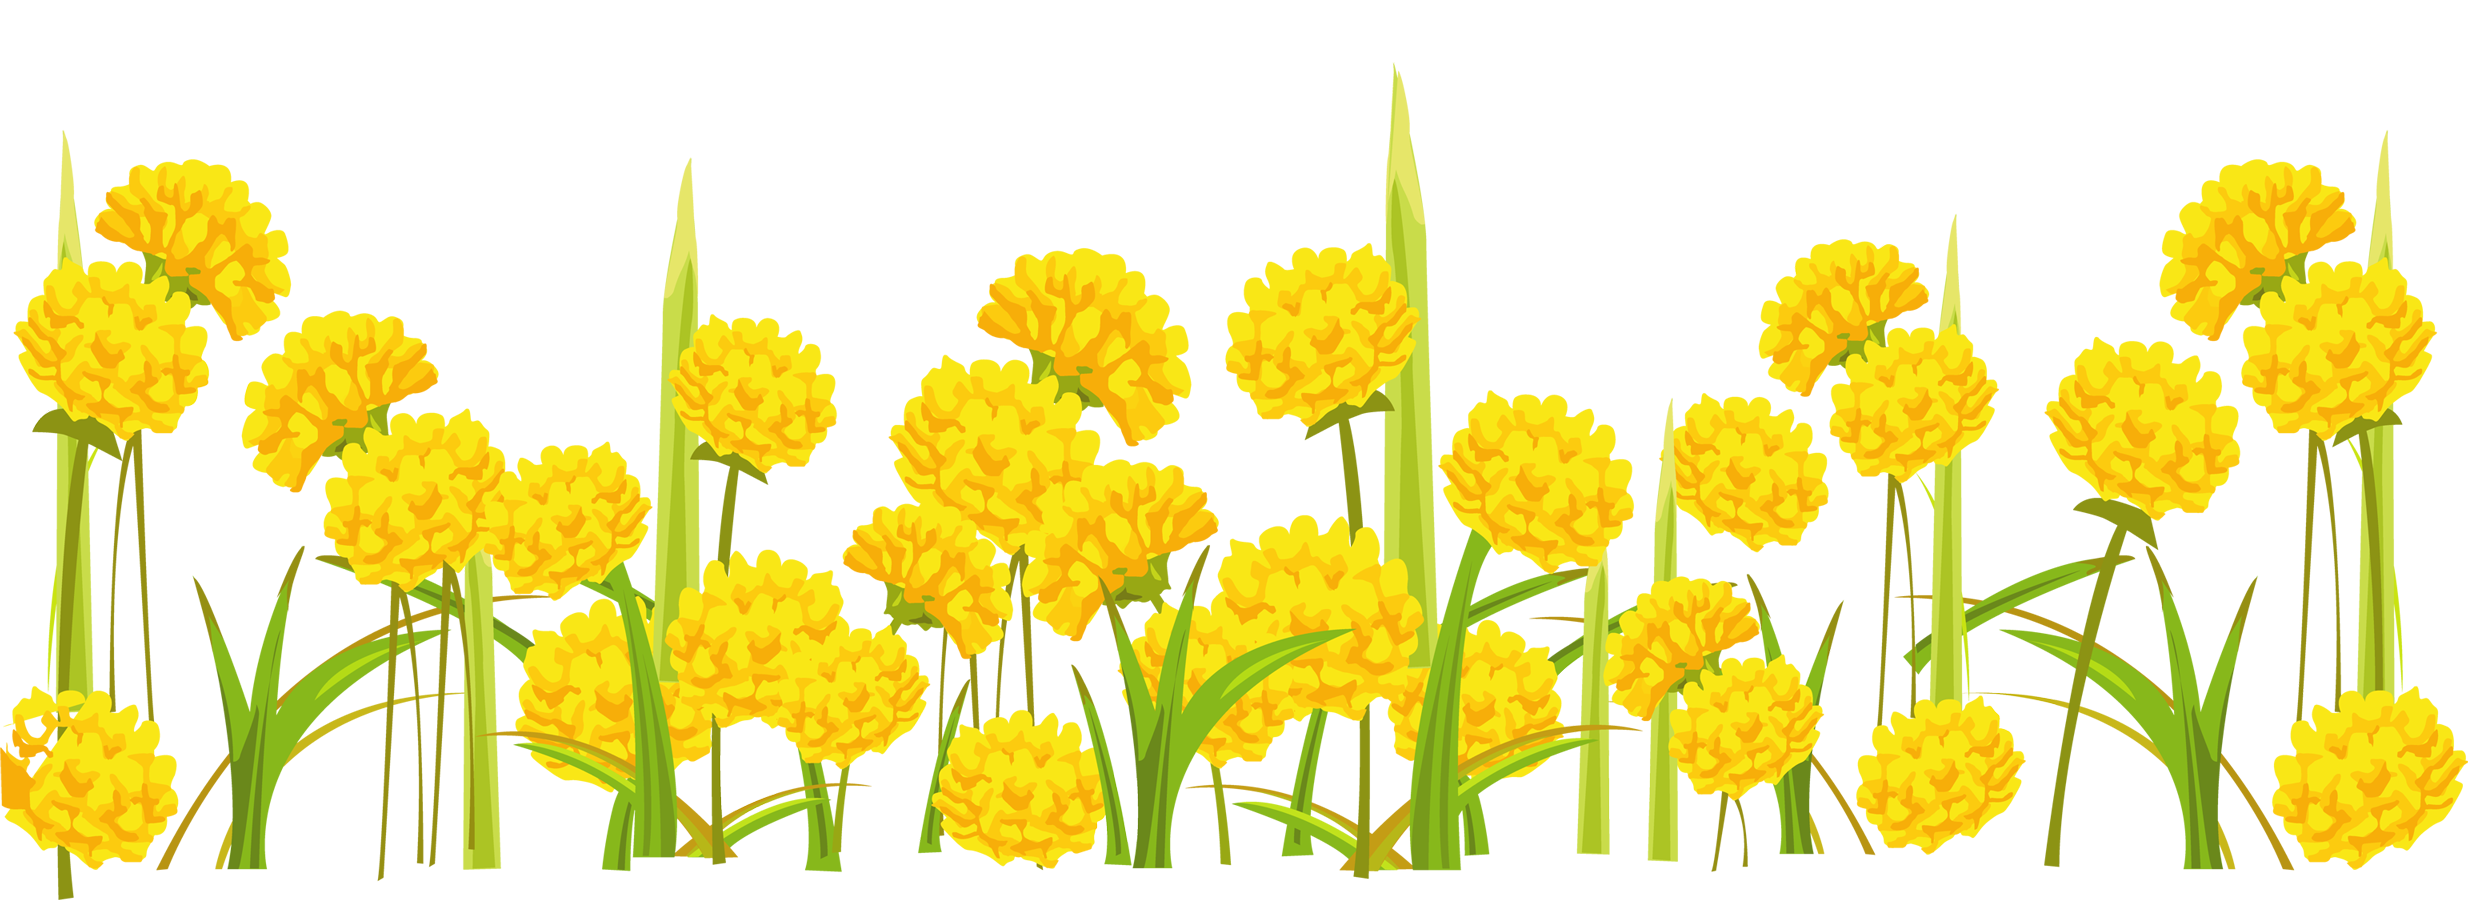 Одуванчик для детей на прозрачном фоне. Одуванчик на белом фоне. Летние цветы на прозрачном фоне. Желтые цветы вектор. Желтые цветы на прозрачном фоне.